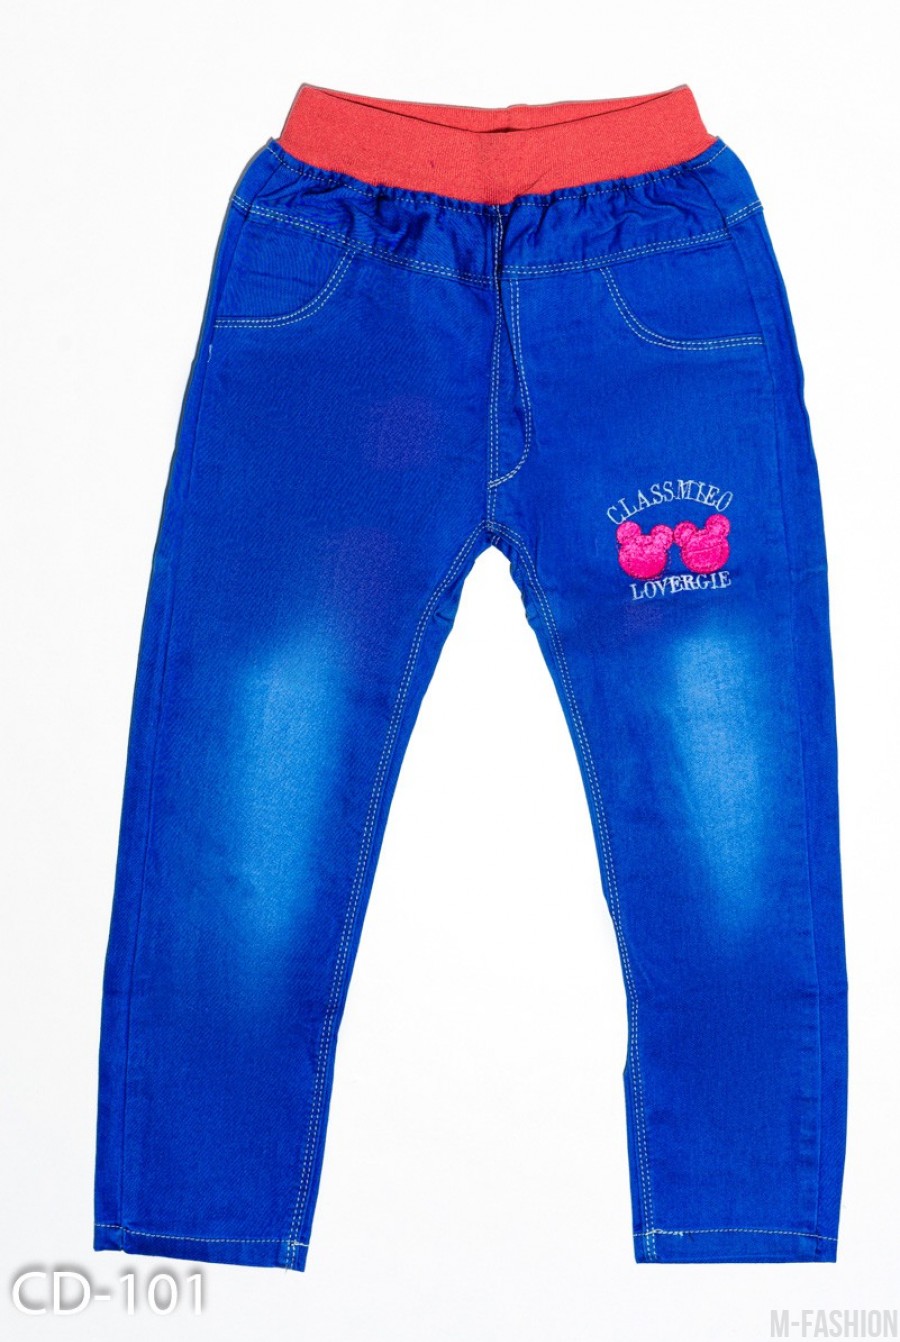 Синие тонкие джинсы на резинке с аппликациями - Фото 1